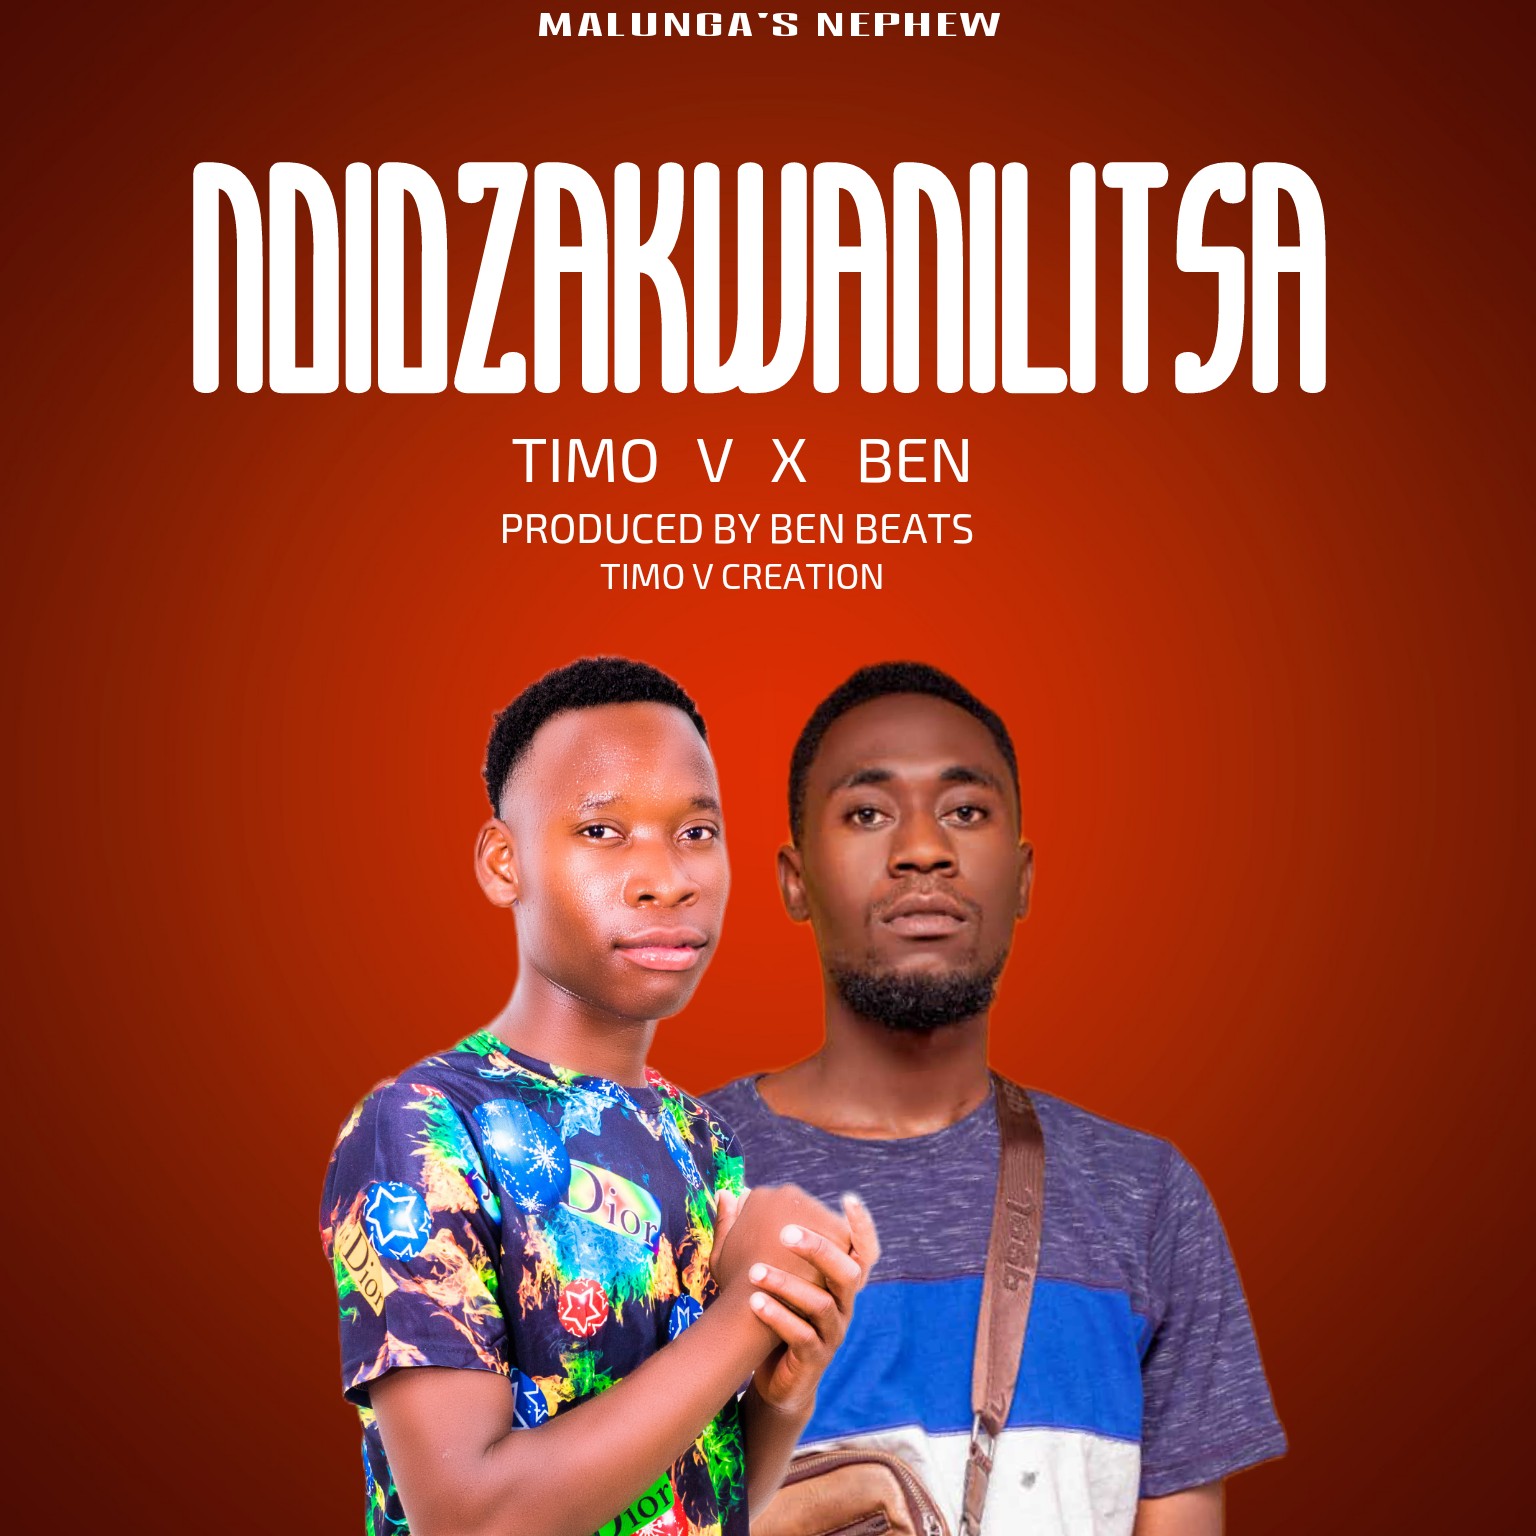 Timo-V-feat-Ben-Ndidzakwanilitsa-Prod-by-Ben-beats